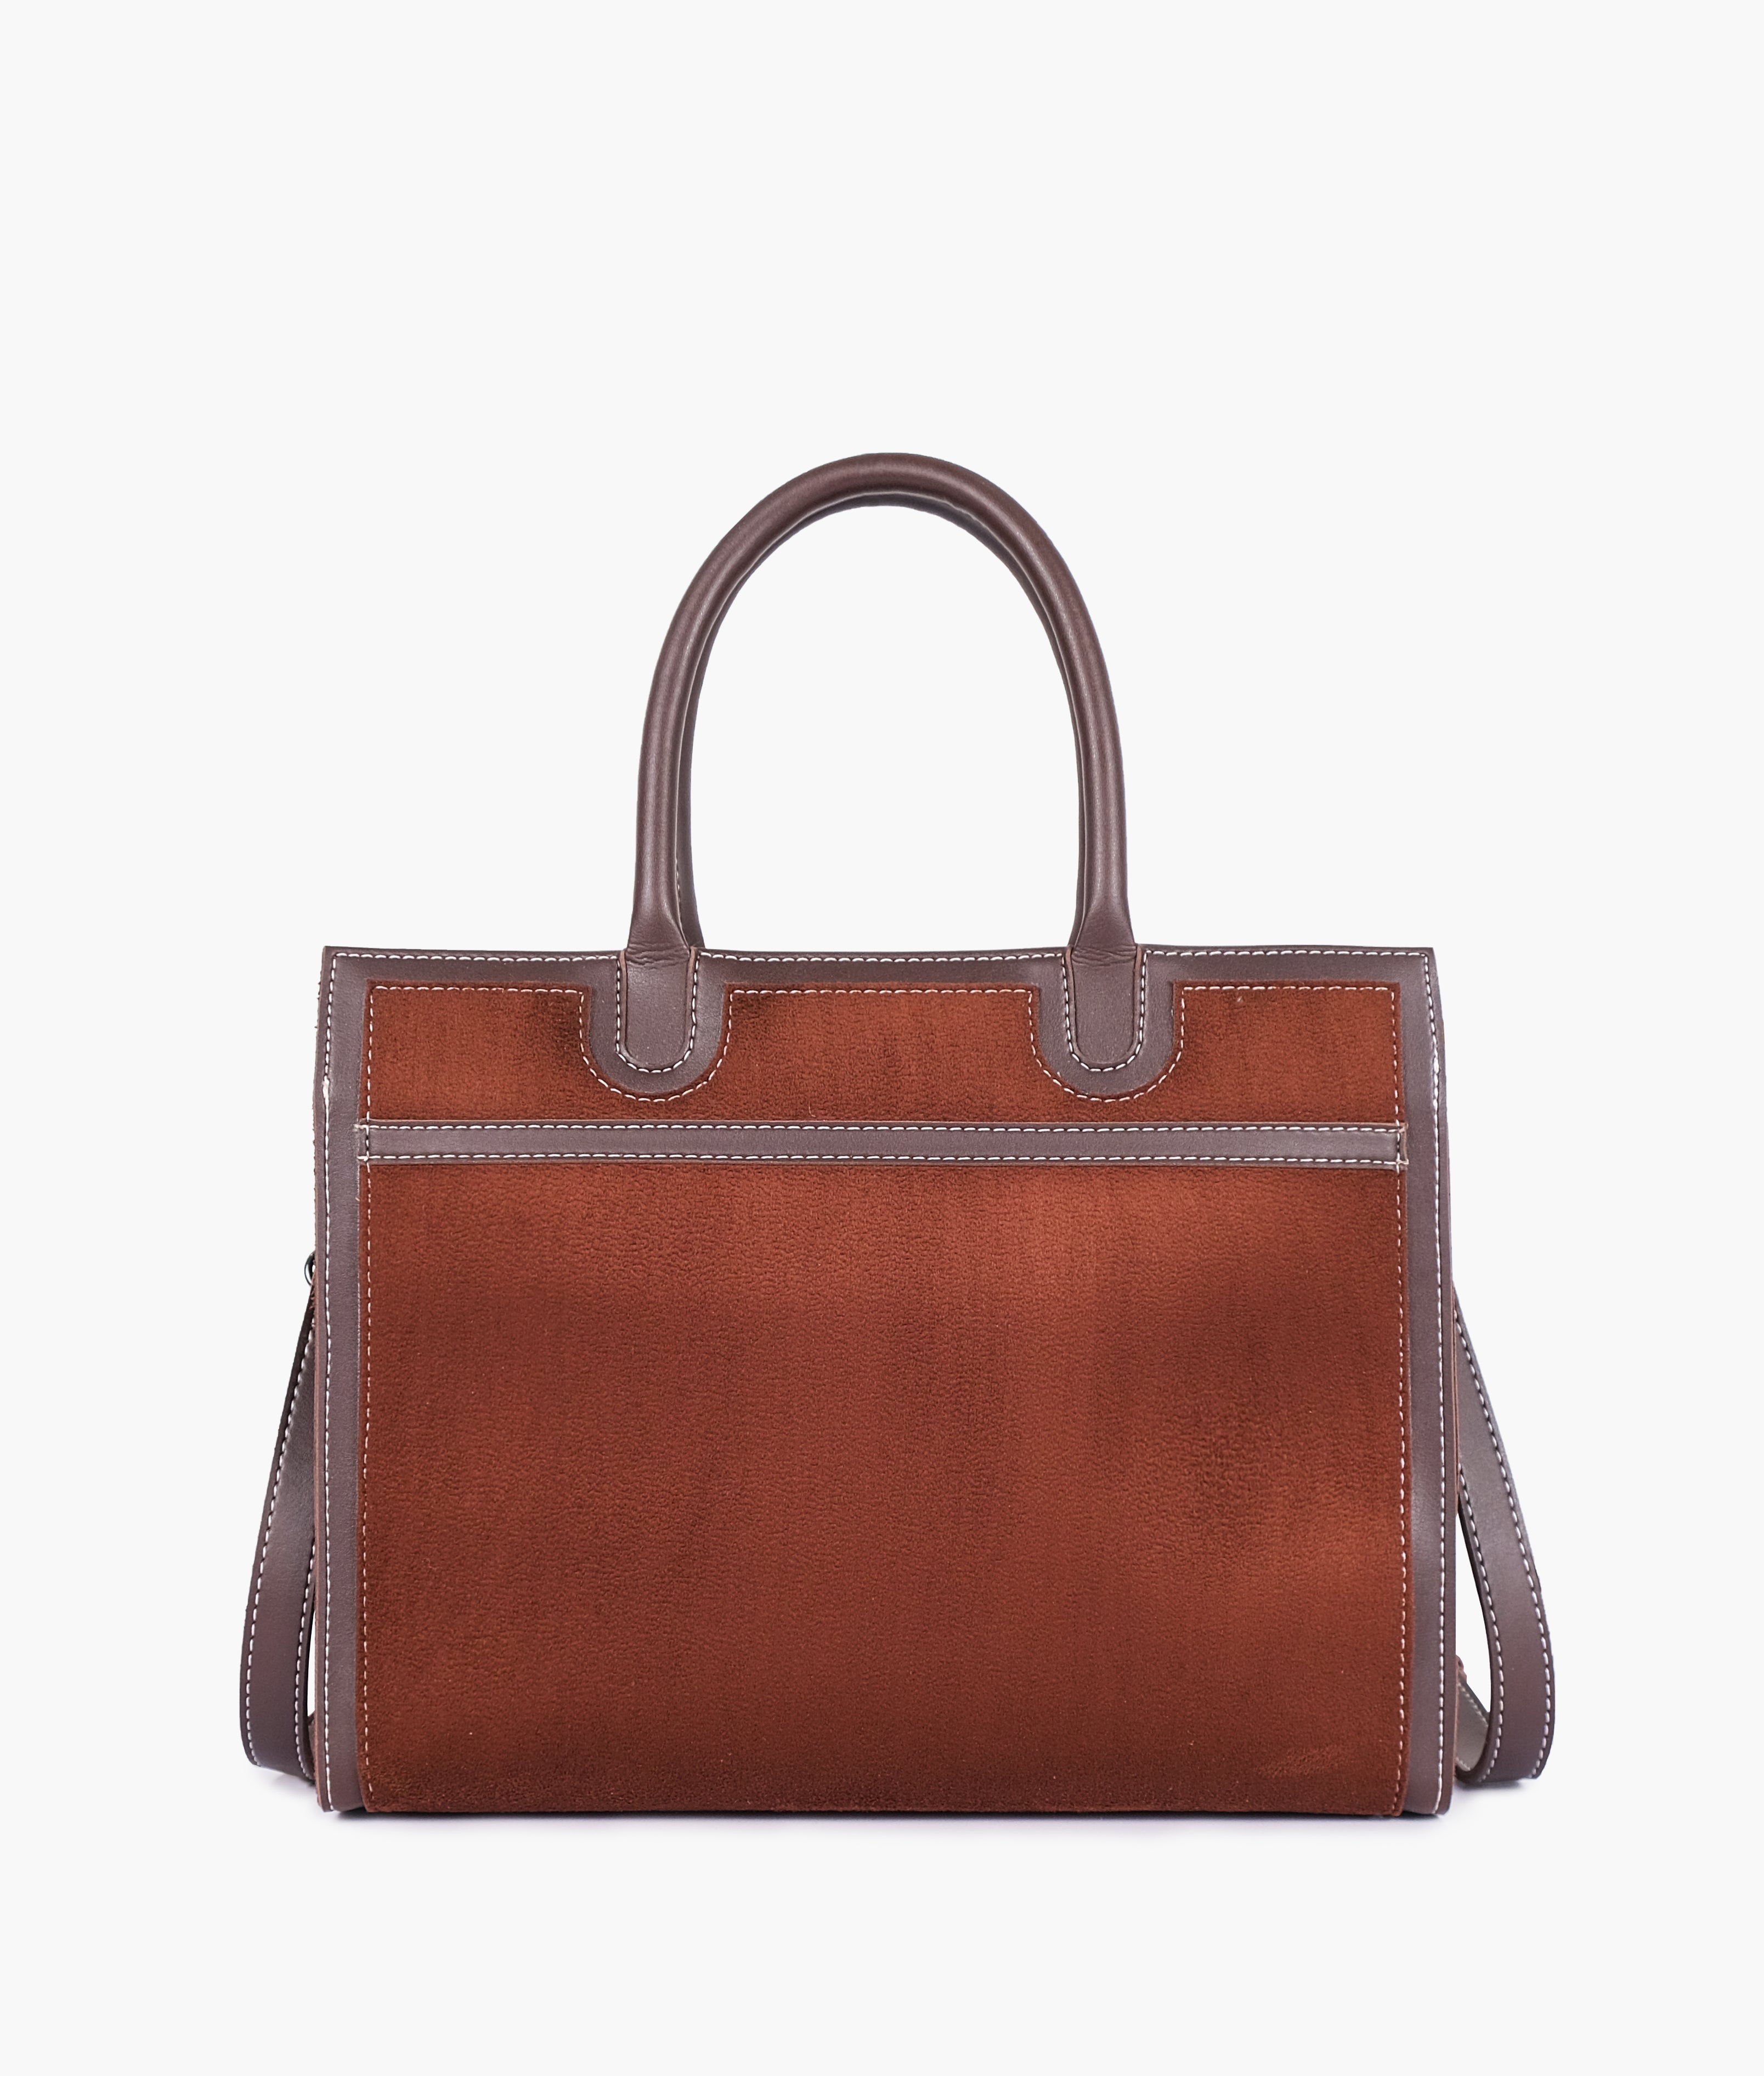 Dark brown suede vintage handbag